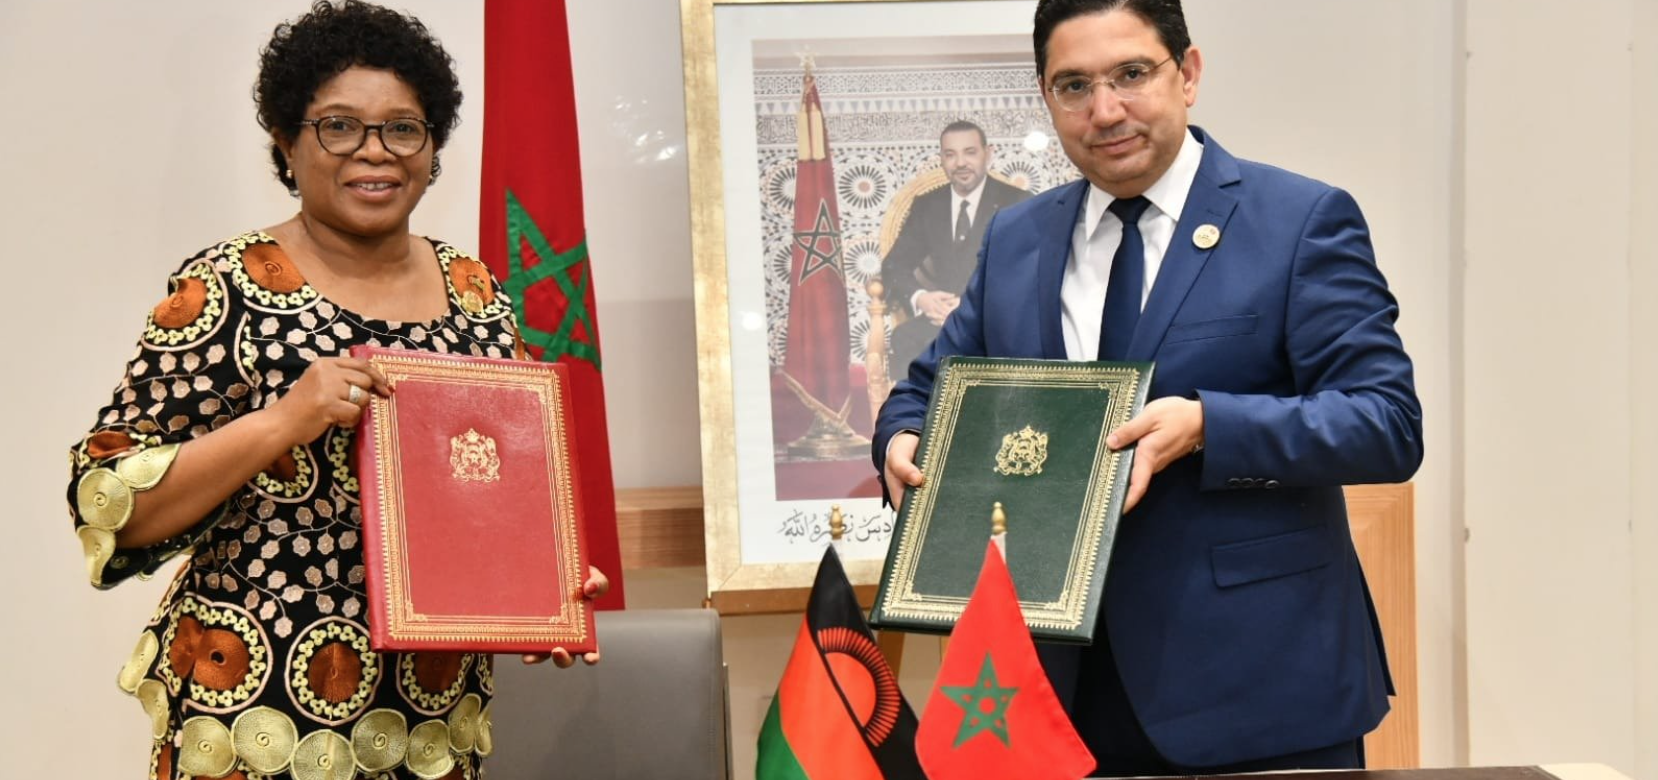 Le Maroc va développer ses relations commerciales avec le Malawi en Afrique dans les secteurs de l'éducation et de la formation, la coopération technique, la sécurité, la promotion économique et l’investissement 